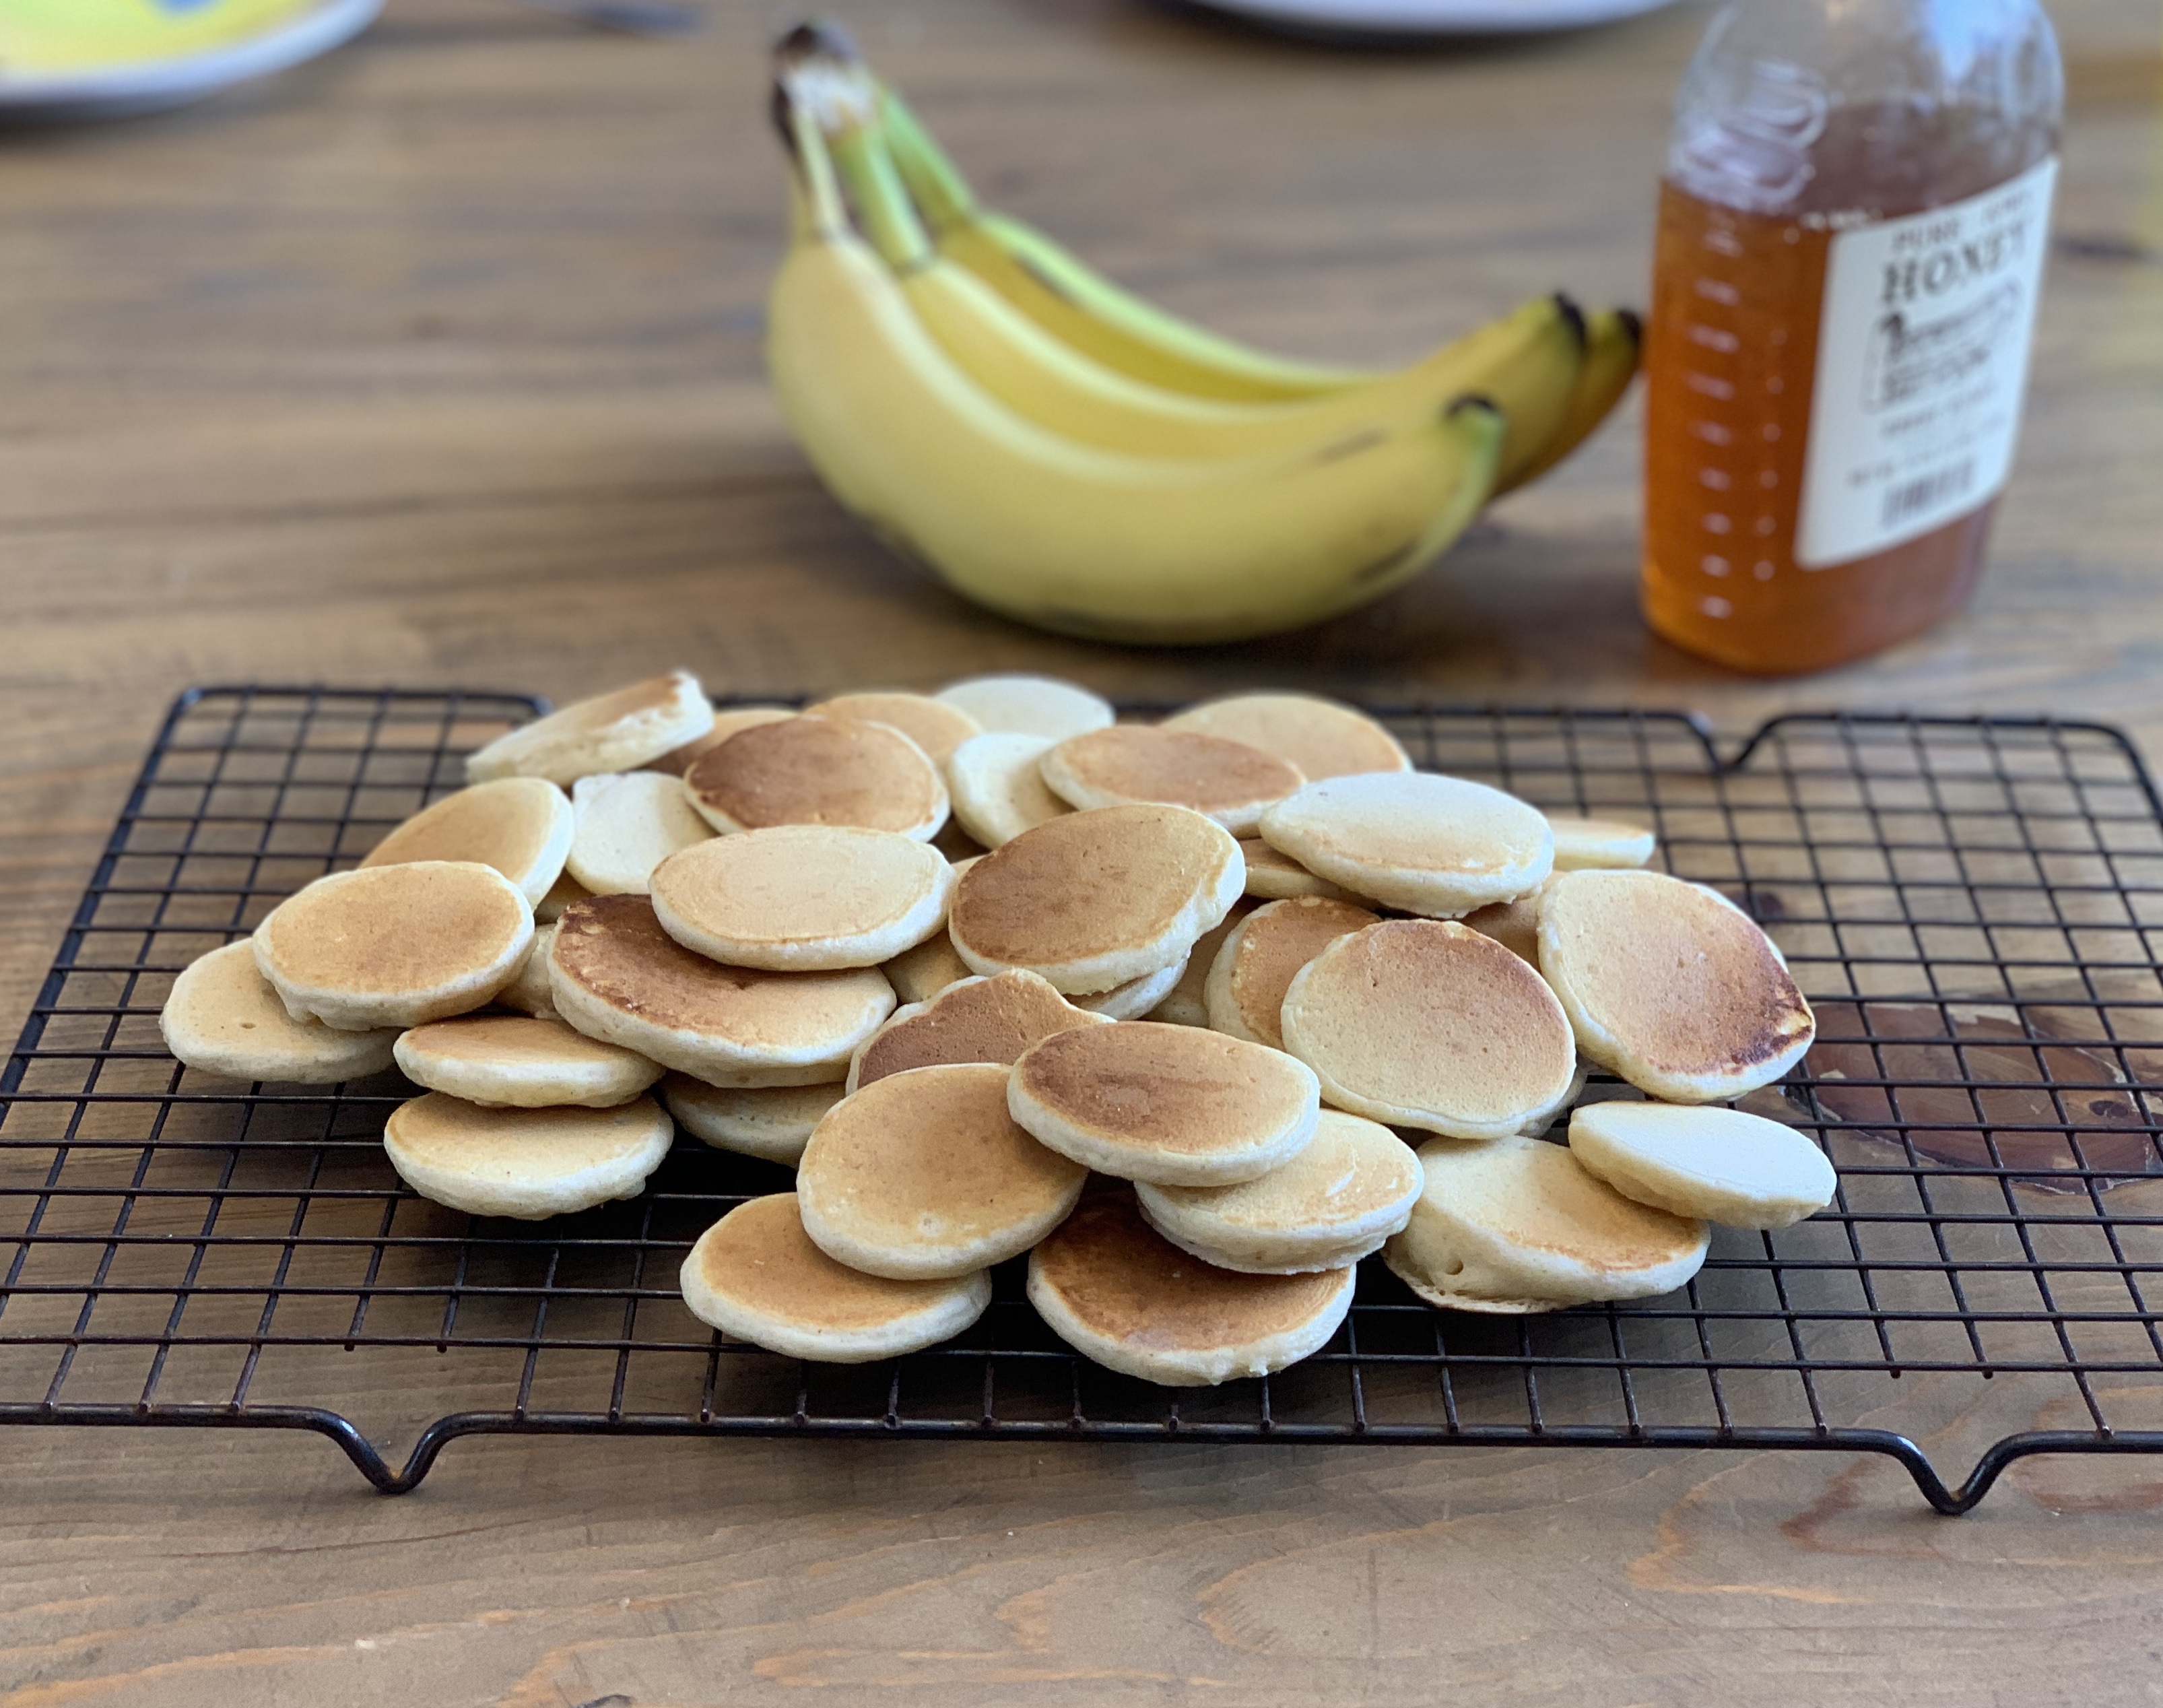 Pancakes ðŸ¥ž